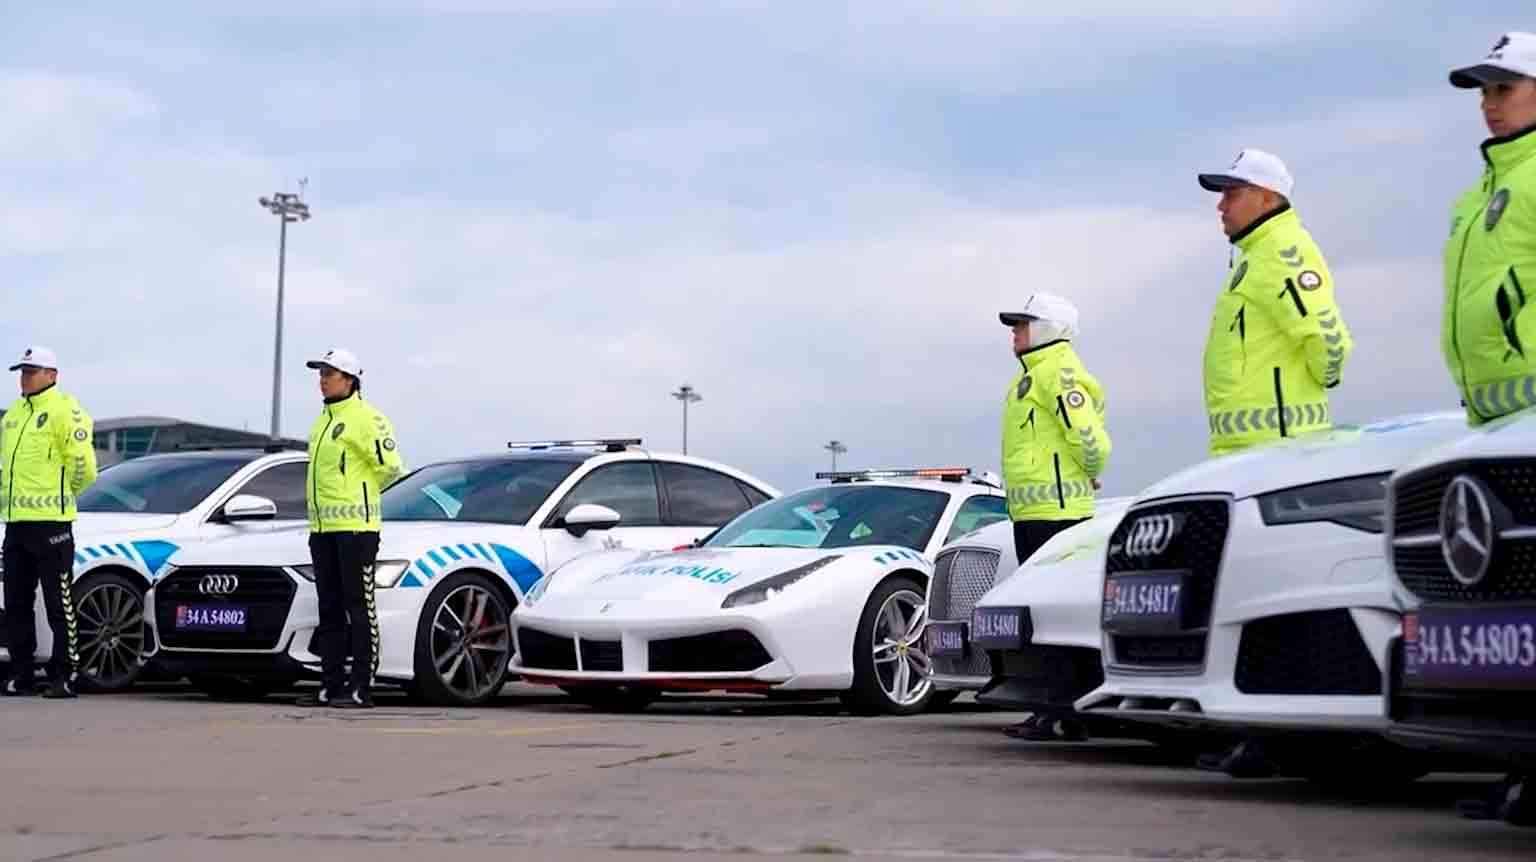 Istanbulpolisen integrerar beslagtagna Ferrari, Bentley och Porsche från en narkotikaoperation i patrullflottan. Bilder och videor: Reprodução twitter @AliYerlikaya 